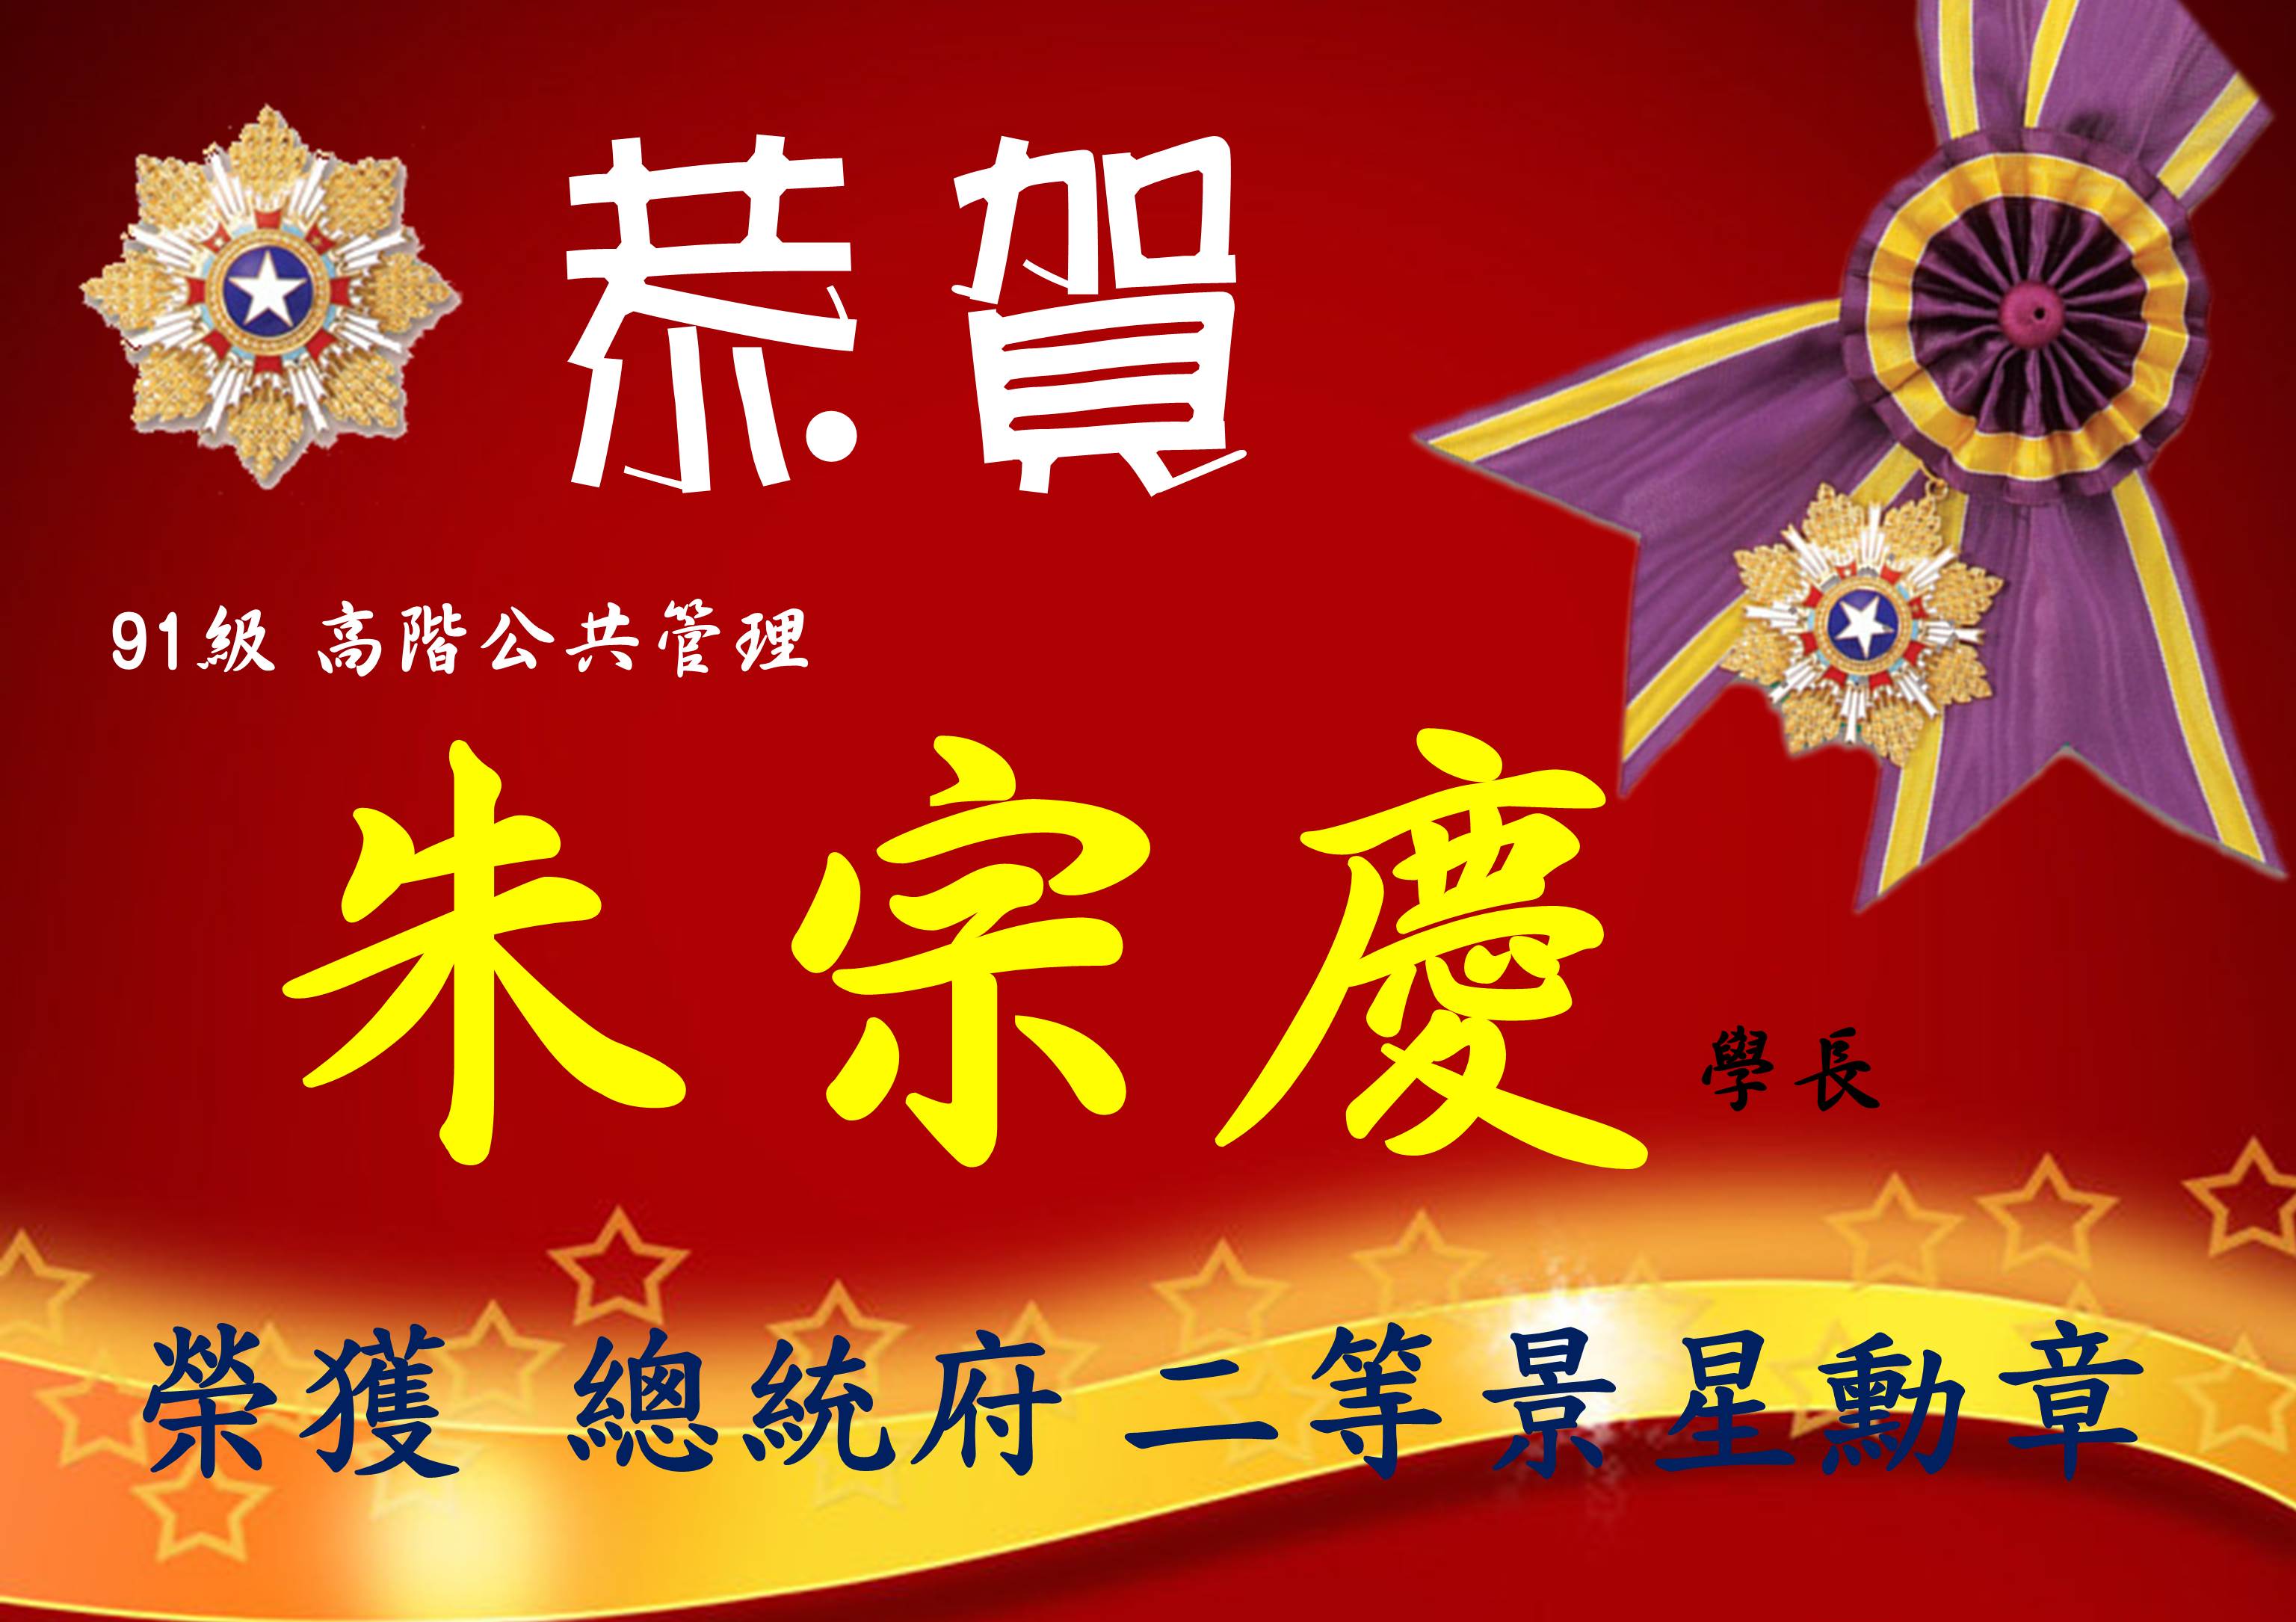 恭賀  91級  朱宗慶 學長 榮獲總統府二等景星勳章